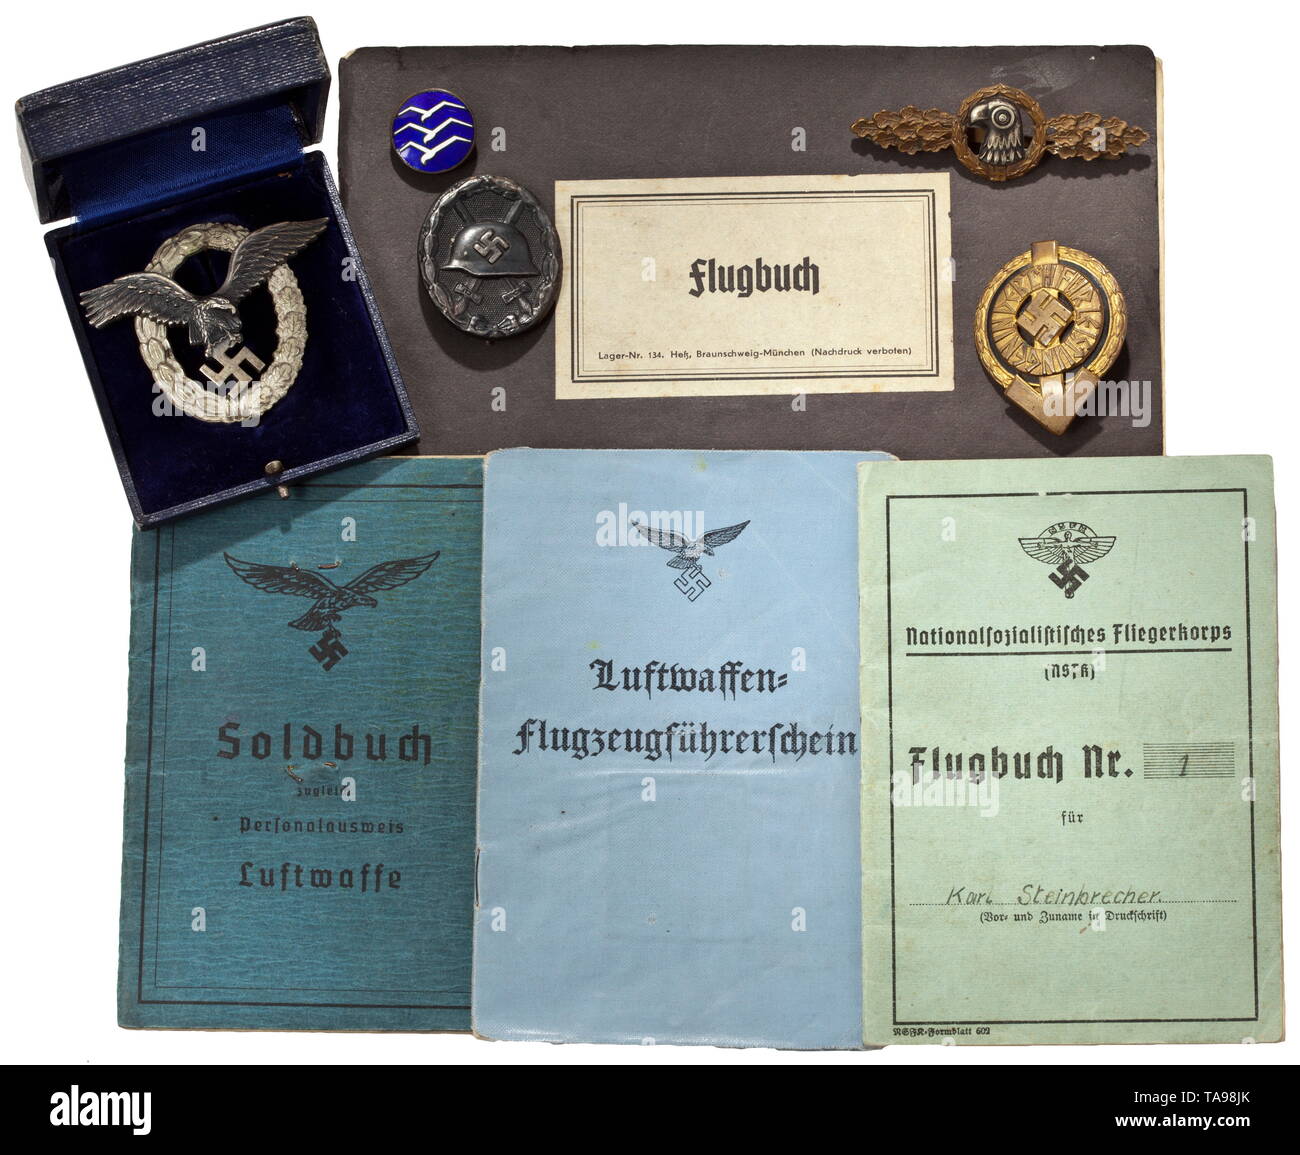 La finca de el piloto Karl Steinbrecher, 2nd/Unidad de Patrulla Marítima 126 pagar libro con fotografía, emitida el 26 de enero de 1944 (duplicado), con muchas entradas como premios, unidades del ejército, recibió el equipo. La licencia de piloto con la fotografía, de fecha 8 de mayo de 1944. Libro de registro de vuelo del NSFK, con fotografía y registrado 80 vuelos. Libro de registro de vuelo de la Luftwaffe, mantenido entre agosto de 1941 y junio de 1942 con aproximadamente 560 vuelos registrados, principalmente la formación de aviones. Insignia de piloto, chapado en plata de metales no ferrosos, el ennegrecido, doble águila remachada con maker's mark 'BSW', sólo Editorial-Use Foto de stock